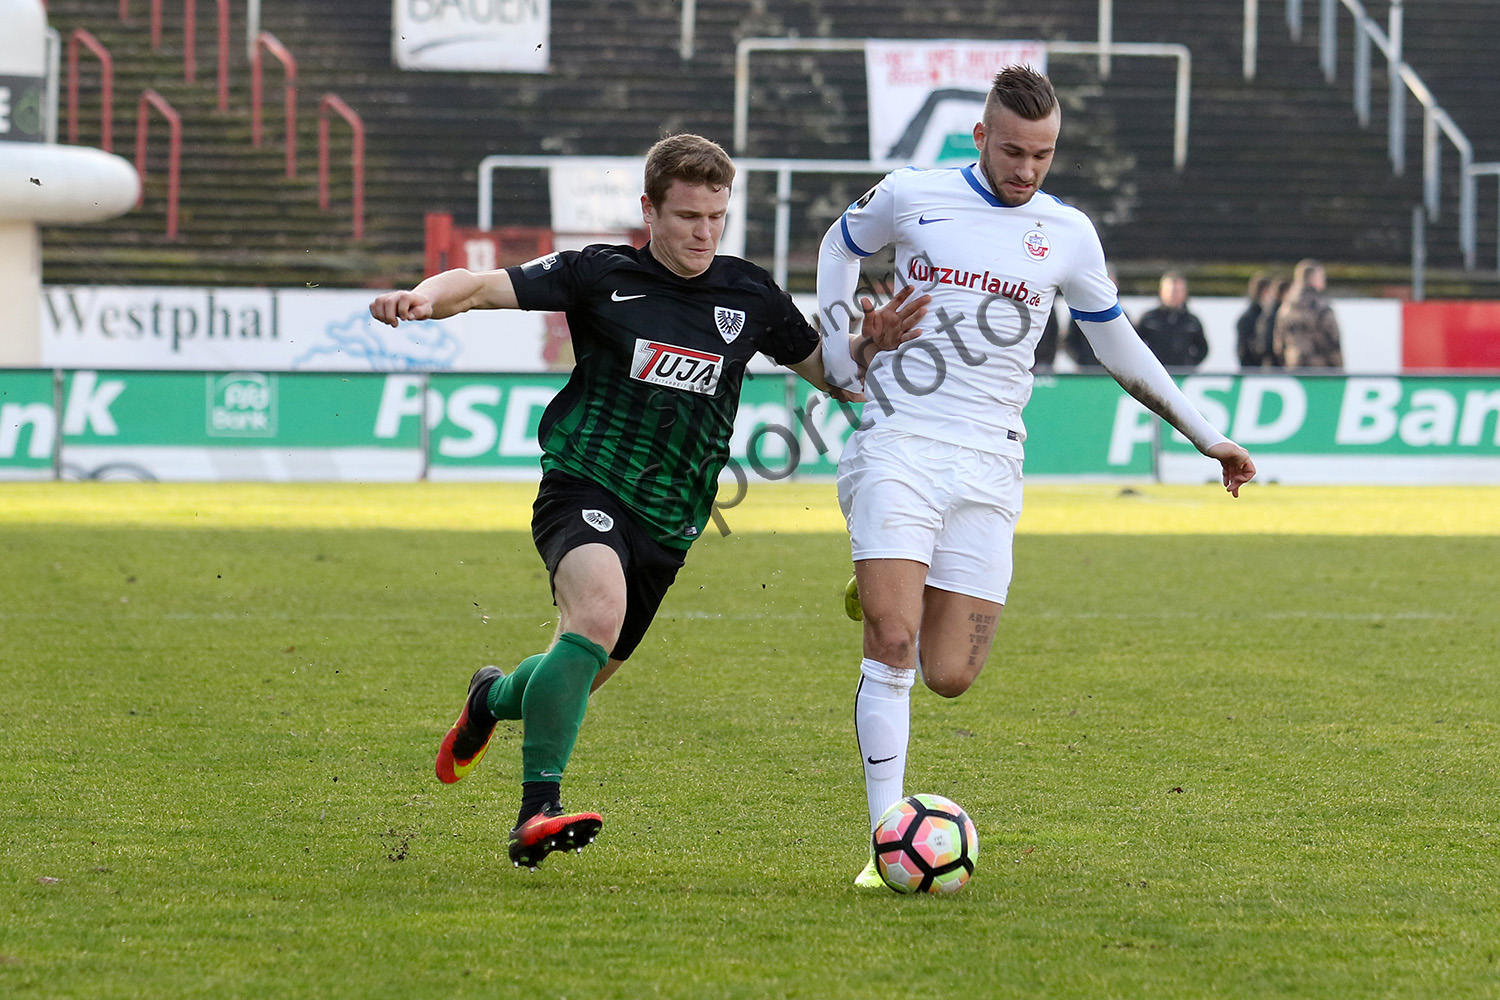 3.Liga - 16/17 - SC Preussen Muenster vs. Hansa Rostock